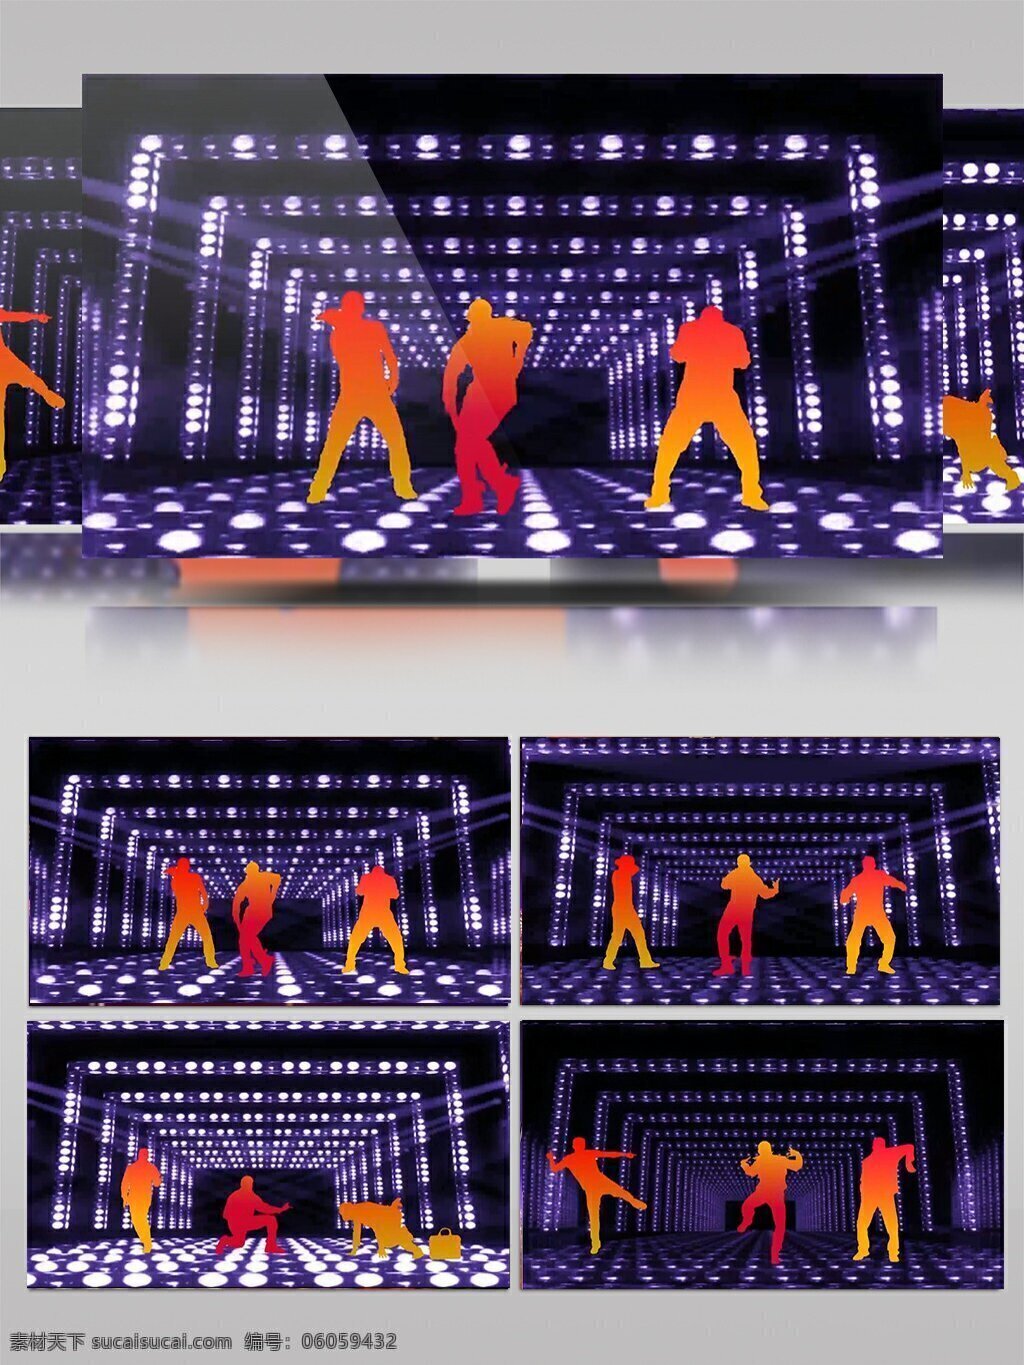 跳舞 机器人 动感 劲舞 视频 舞蹈 光效 酒吧 酒吧舞台 3d动画 热辣 光影 led视频 歌舞厅 秀场 迪斯科 夜店 嗨歌